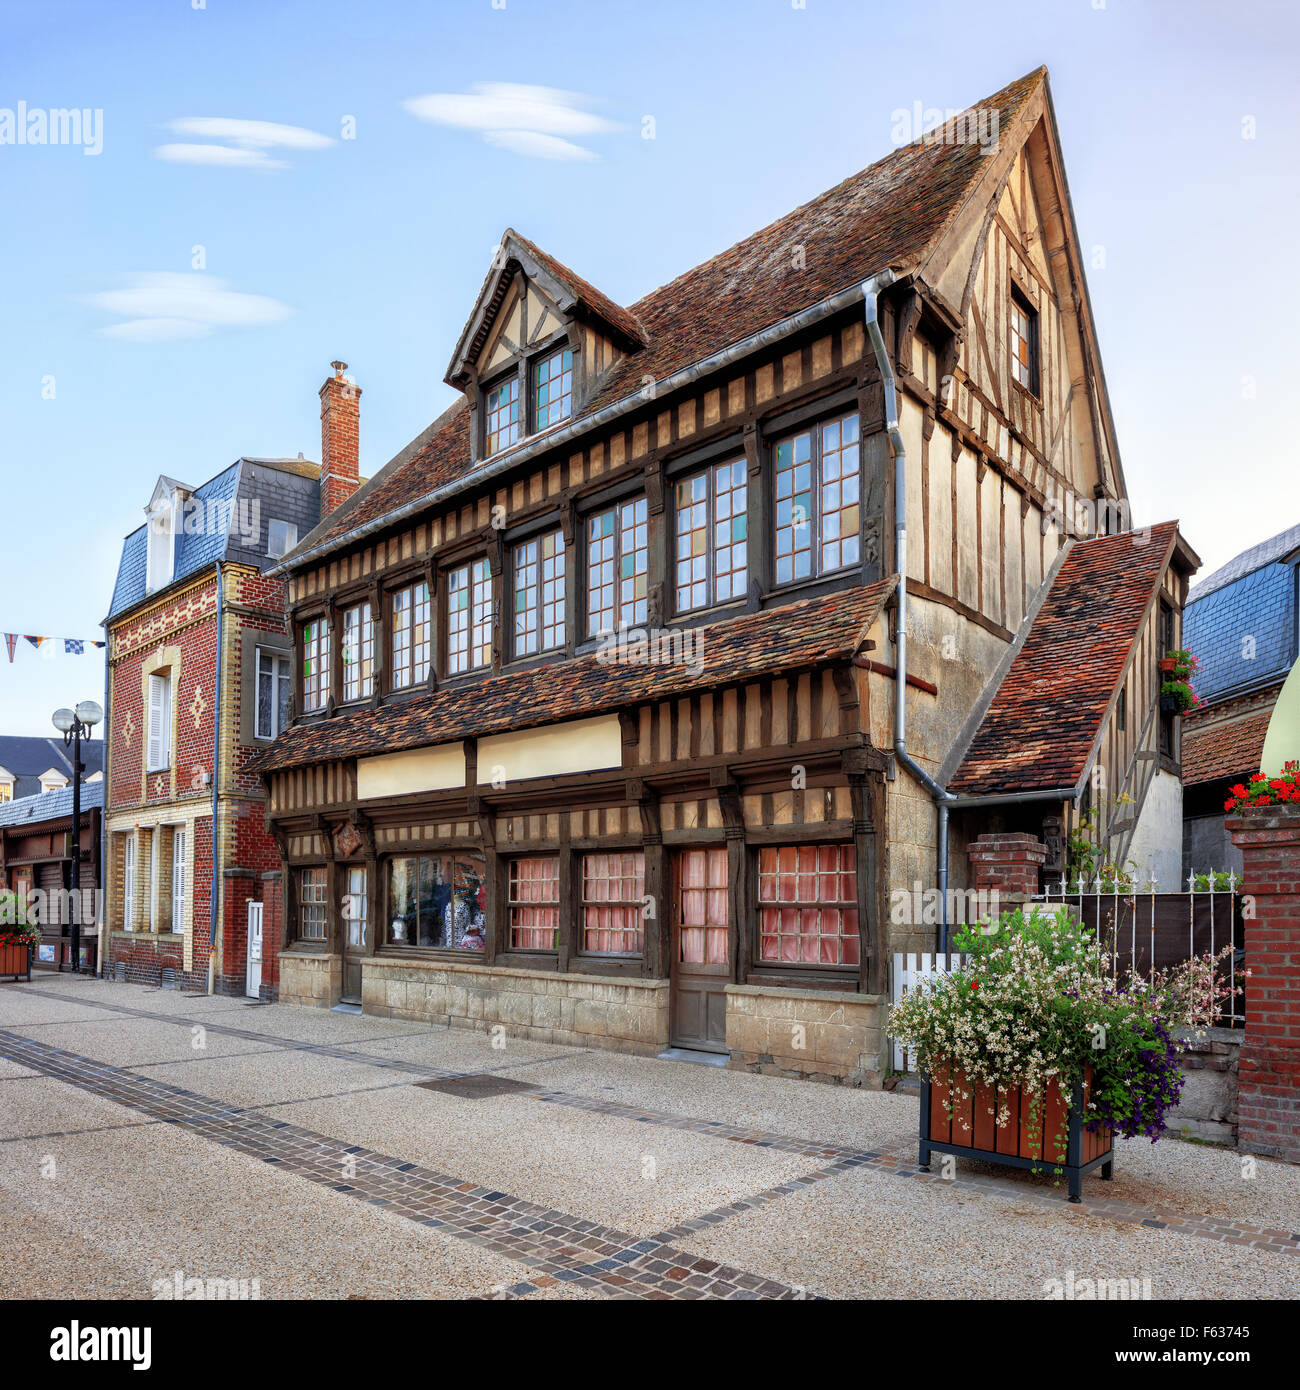 Etretat commune architecture traditionnelle, France Banque D'Images